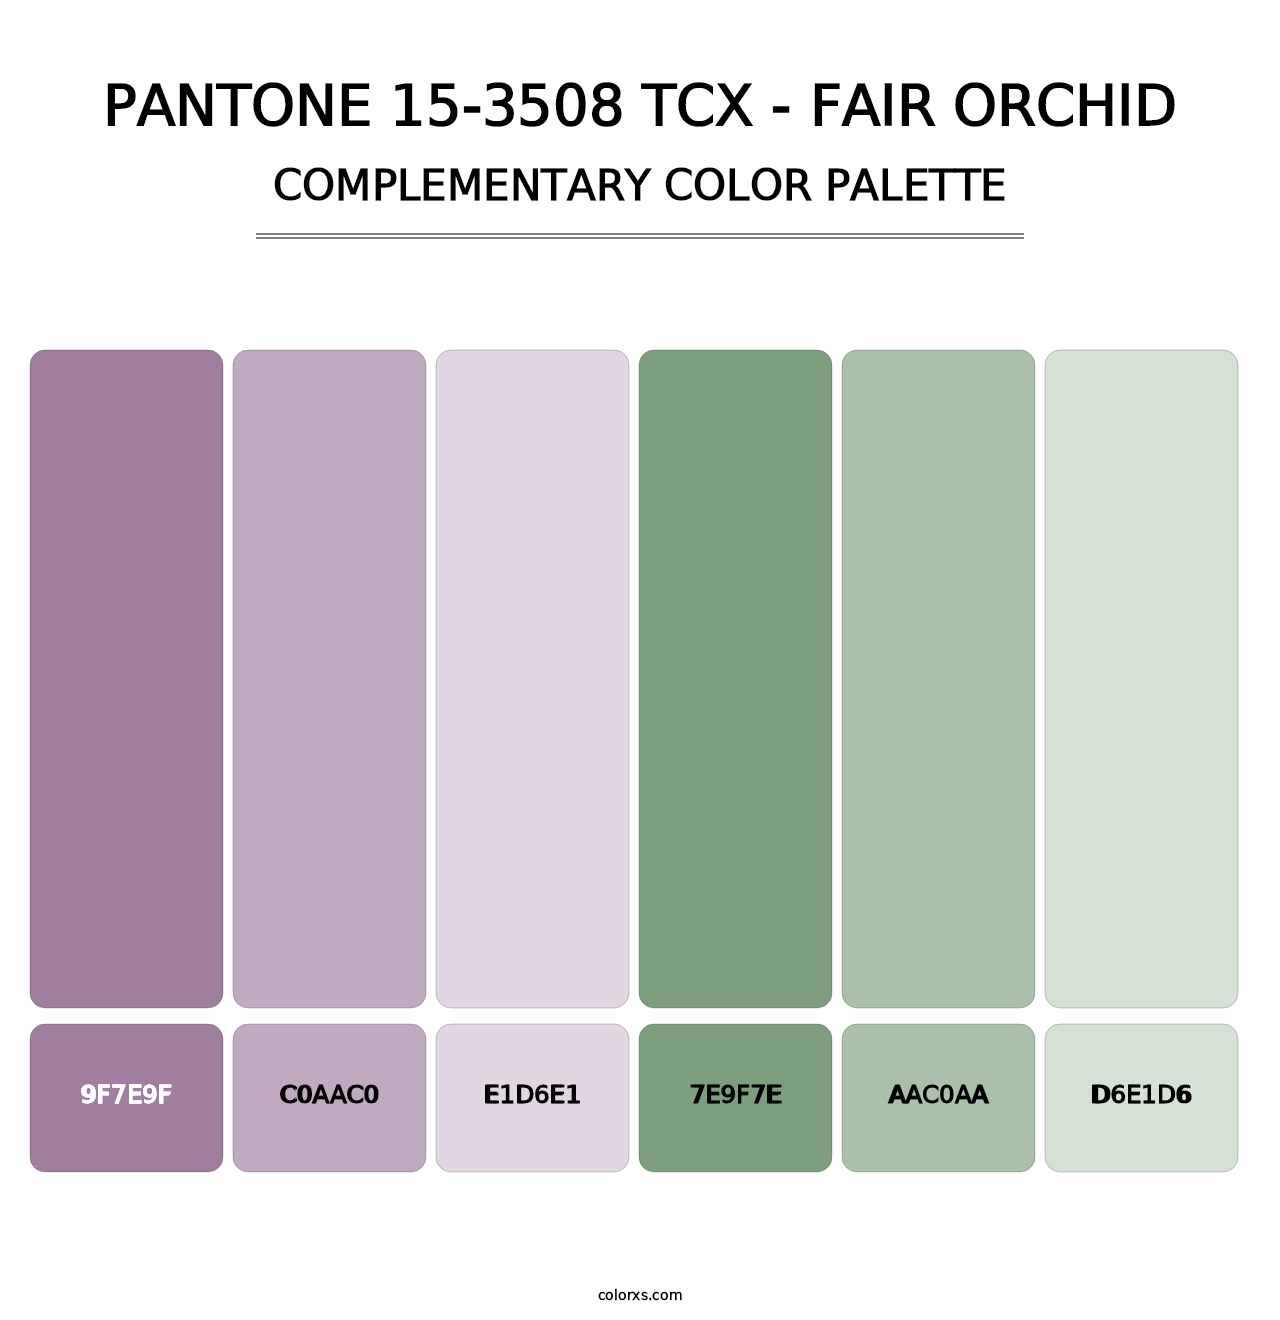 PANTONE 15-3508 TCX - Fair Orchid - Complementary Color Palette